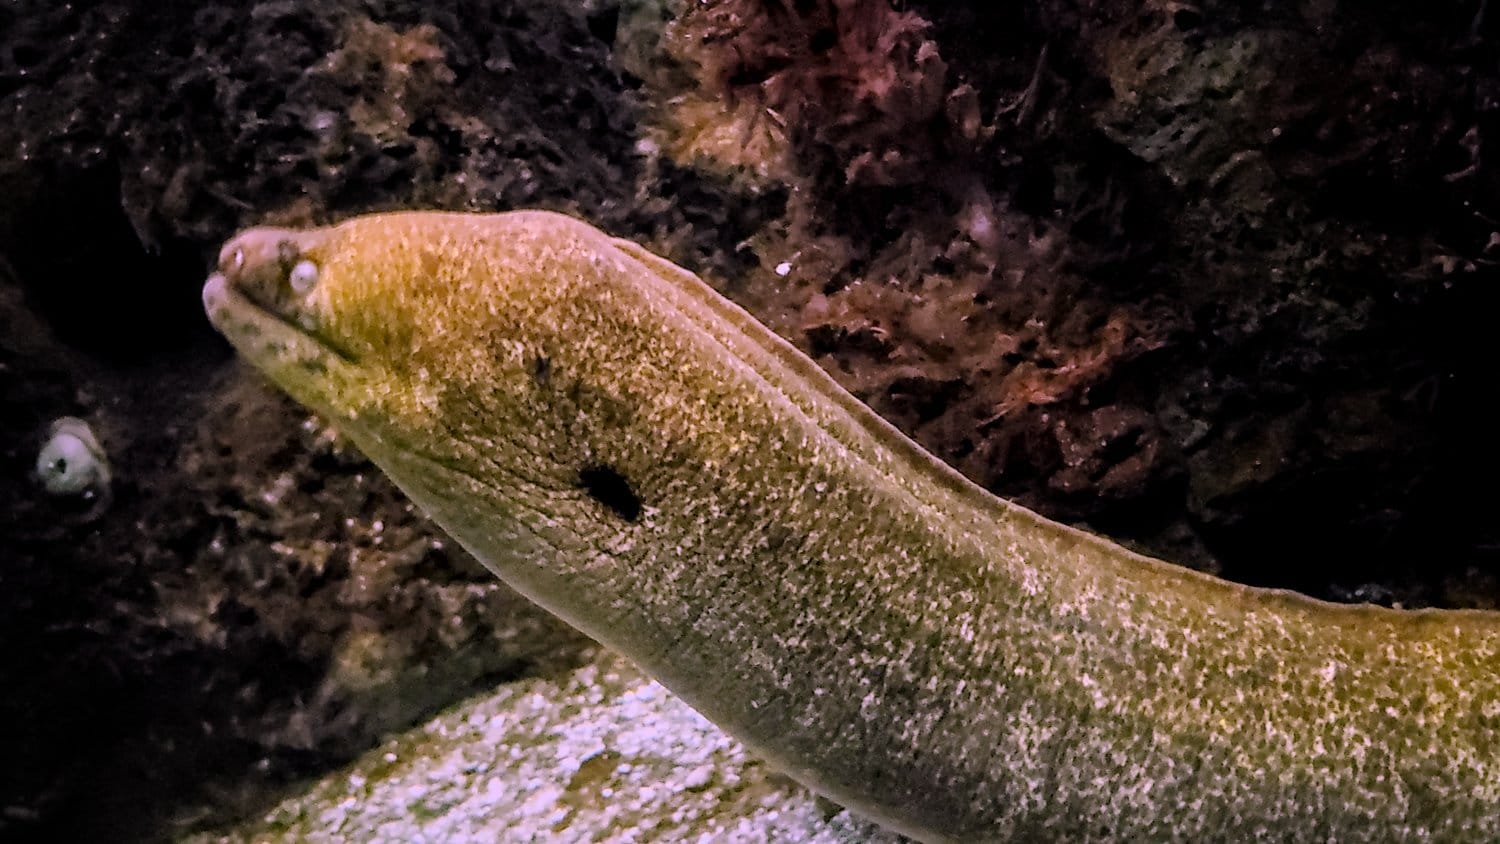 Eel display at Shedd Aquarium.